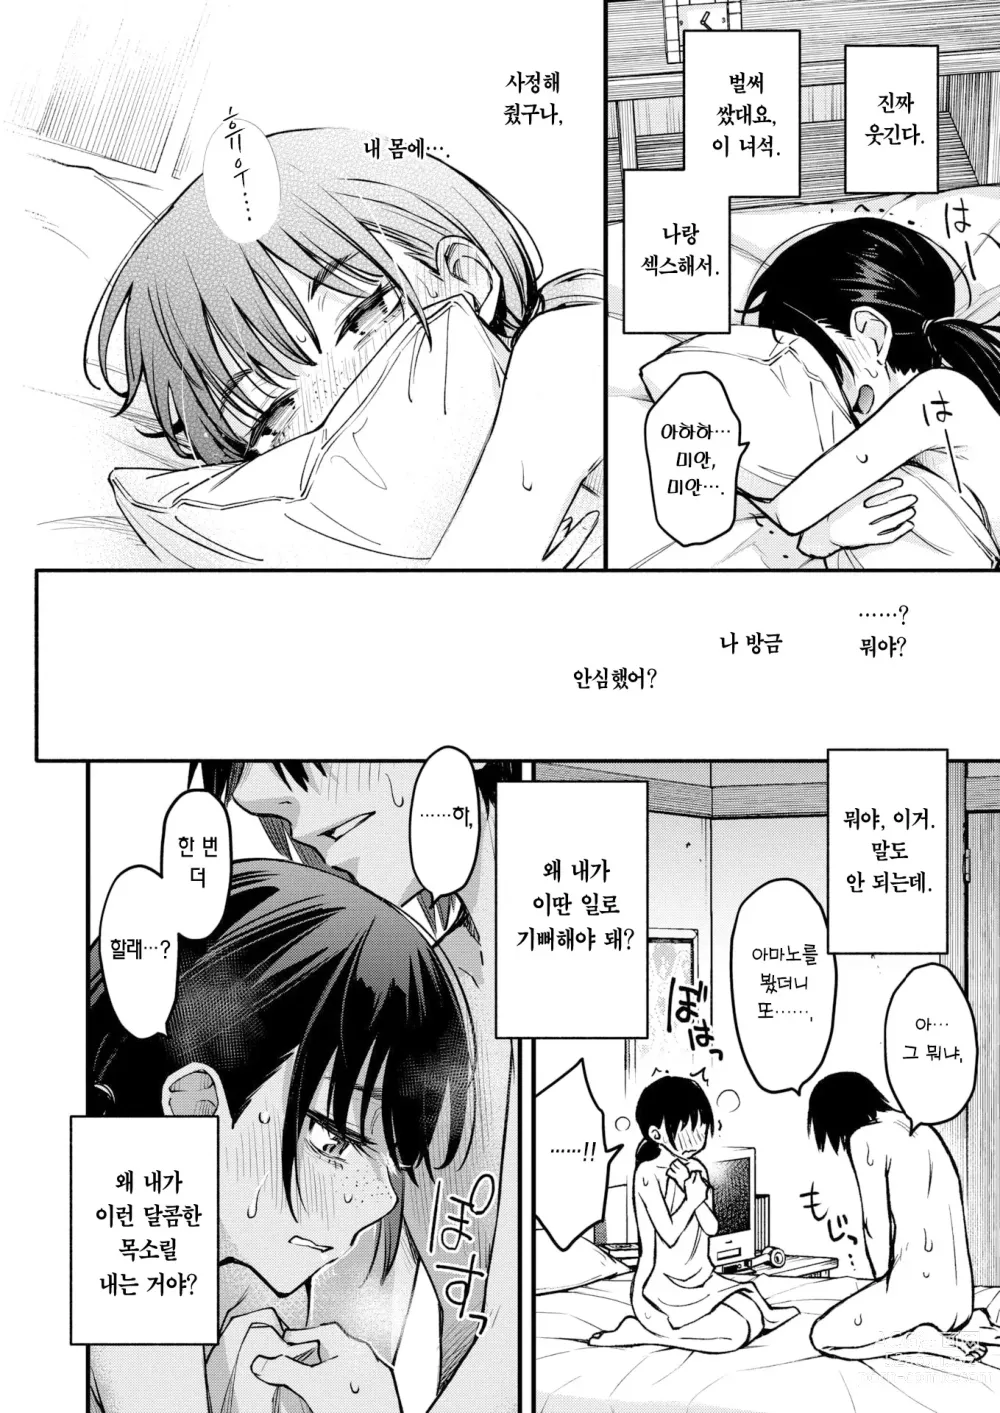 Page 15 of manga 음침한 애들끼리 하는 섹스가 제일 야하다 #2 ―아마노 유이카의 경우―